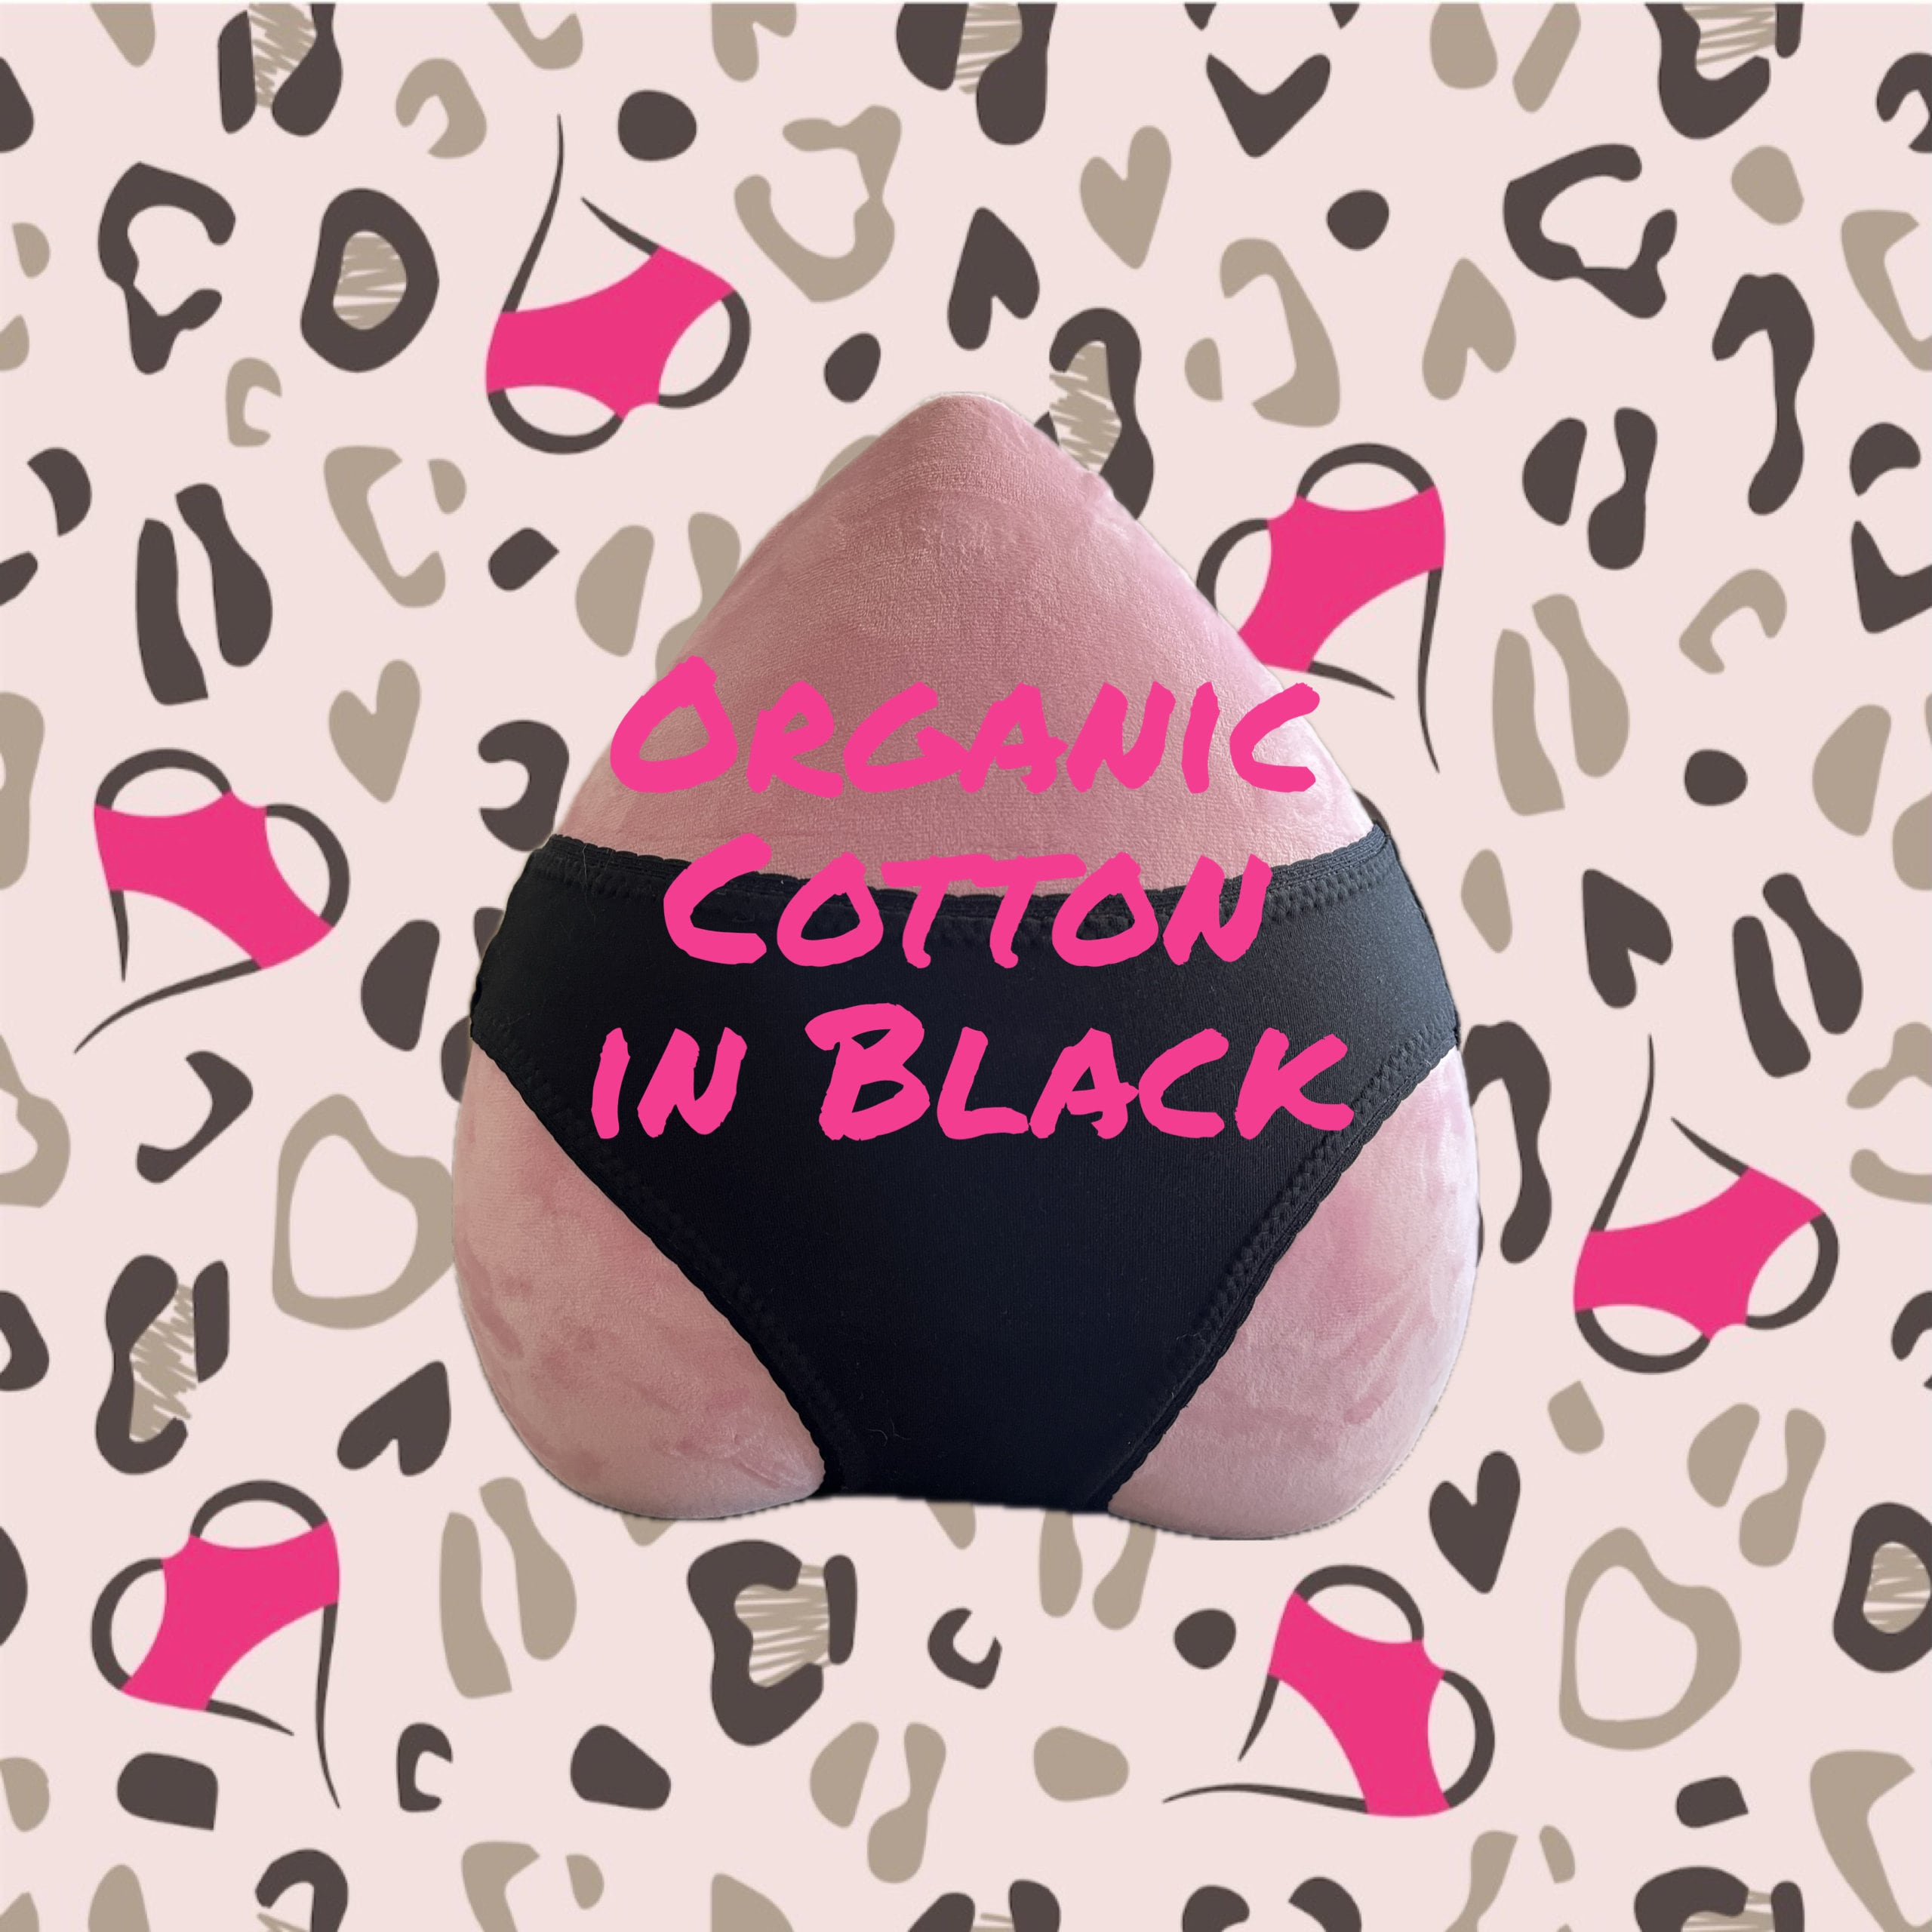 Organic-cotton/hemp Cheeky Undies, Blush-pink Avocado Pit Dye